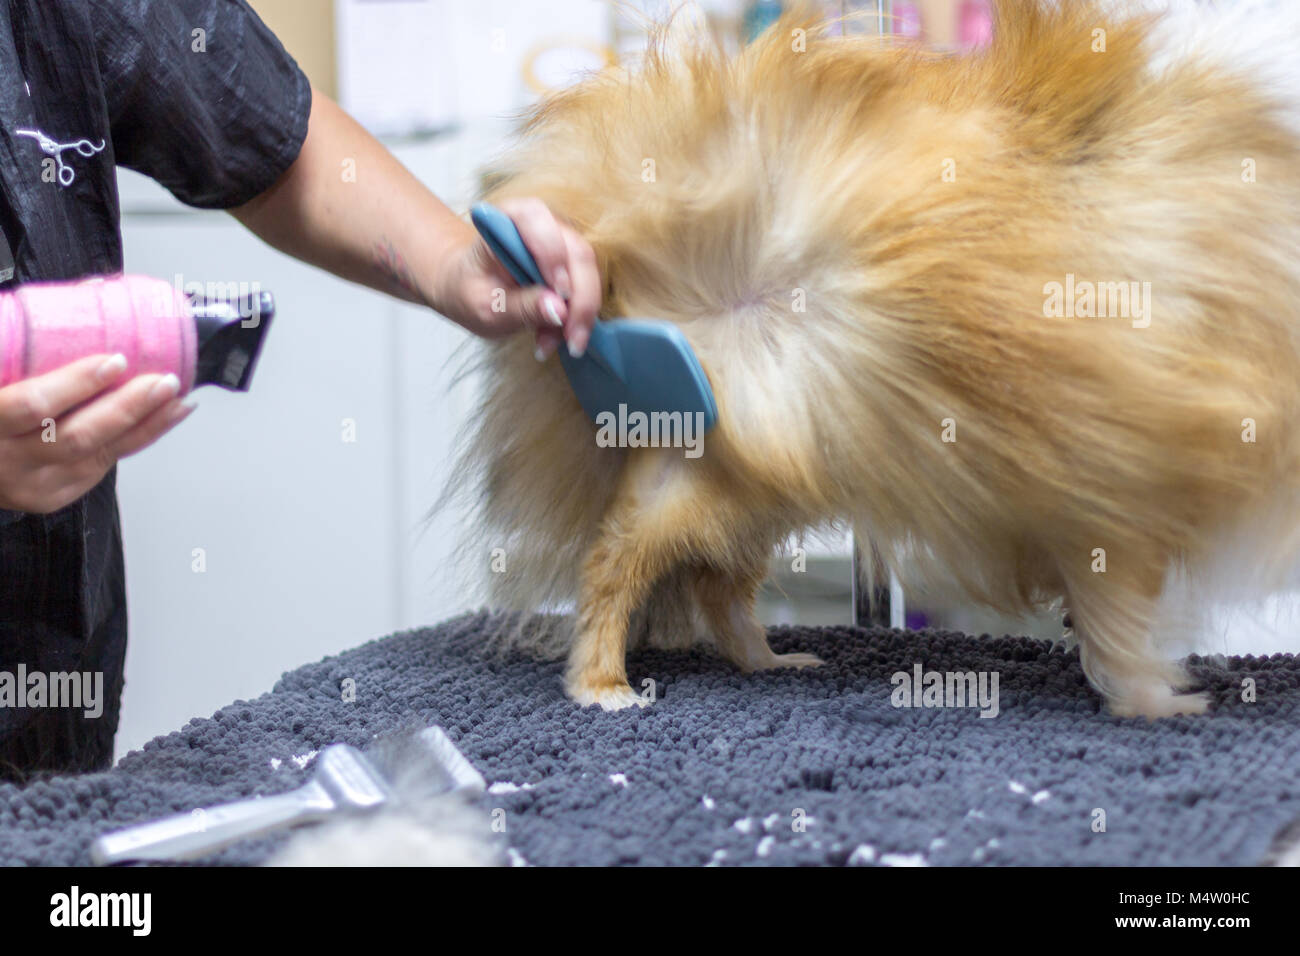 Salón de peluquería canina fotografías e imágenes de alta resolución -  Página 5 - Alamy